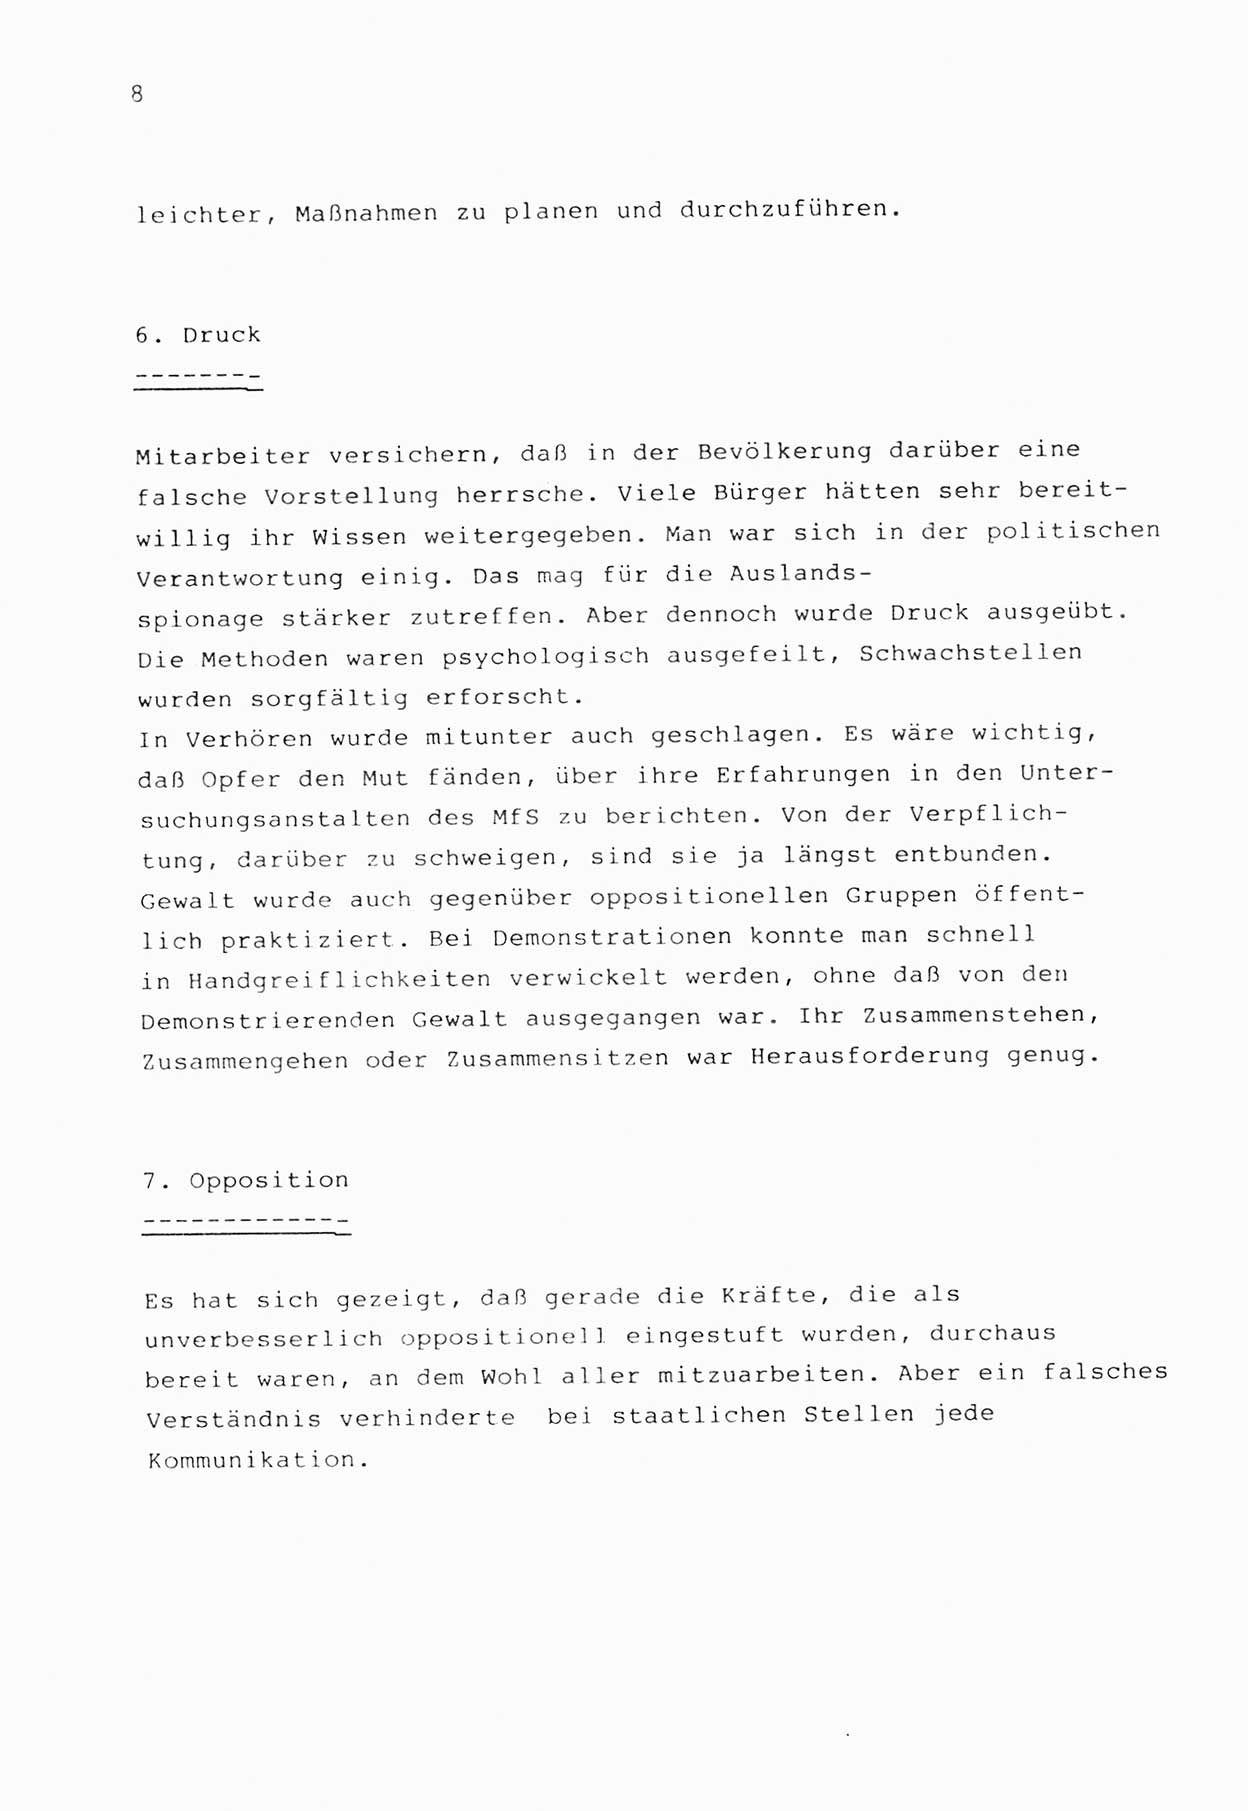 Zwie-Gespräch, Beiträge zur Bewältigung der Stasi-Vergangenheit [Deutsche Demokratische Republik (DDR)], Ausgabe Nr. 1, Berlin 1991, Seite 8 (Zwie-Gespr. Ausg. 1 1991, S. 8)